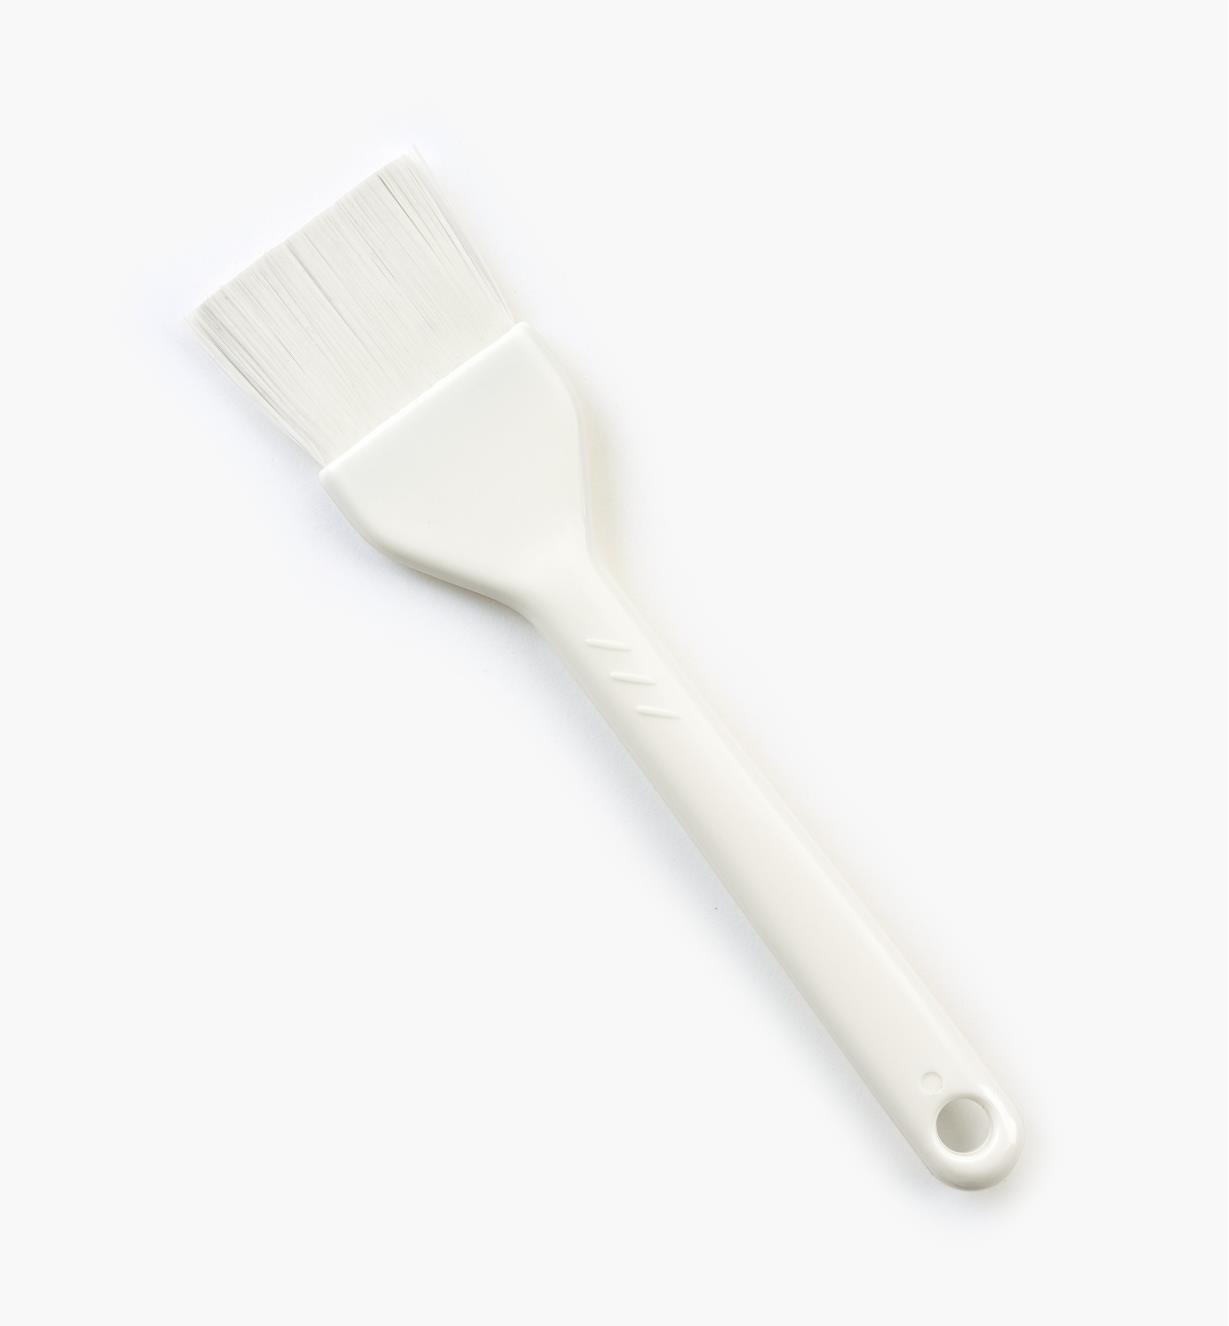 EM322 - Pastry Brush